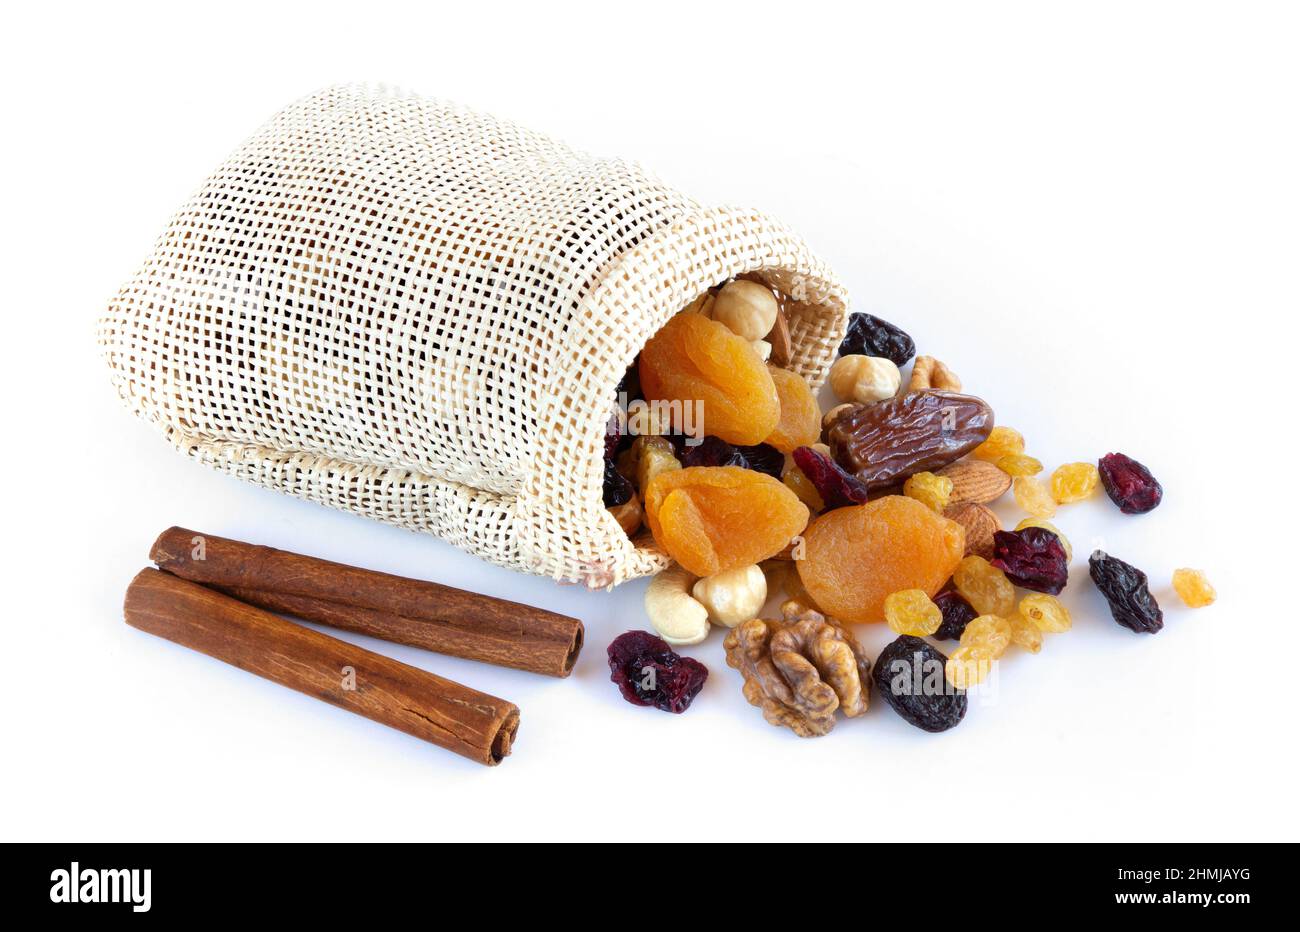 Frutos secos y nueces en un saco sobre fondo blanco Foto de stock